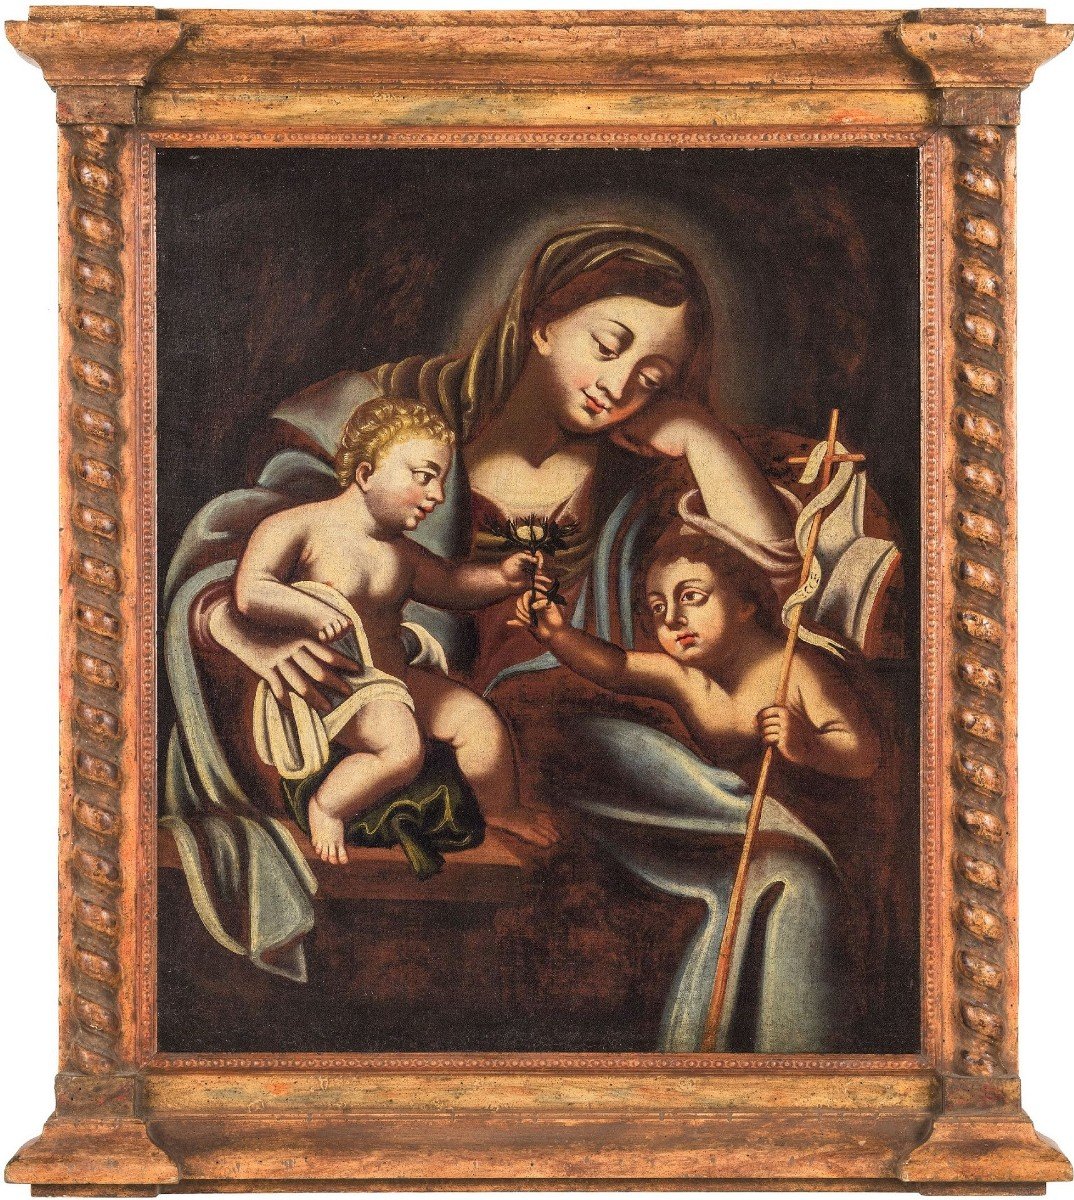 La Vergine col Bambino e San Giovannino - Spagna, '500